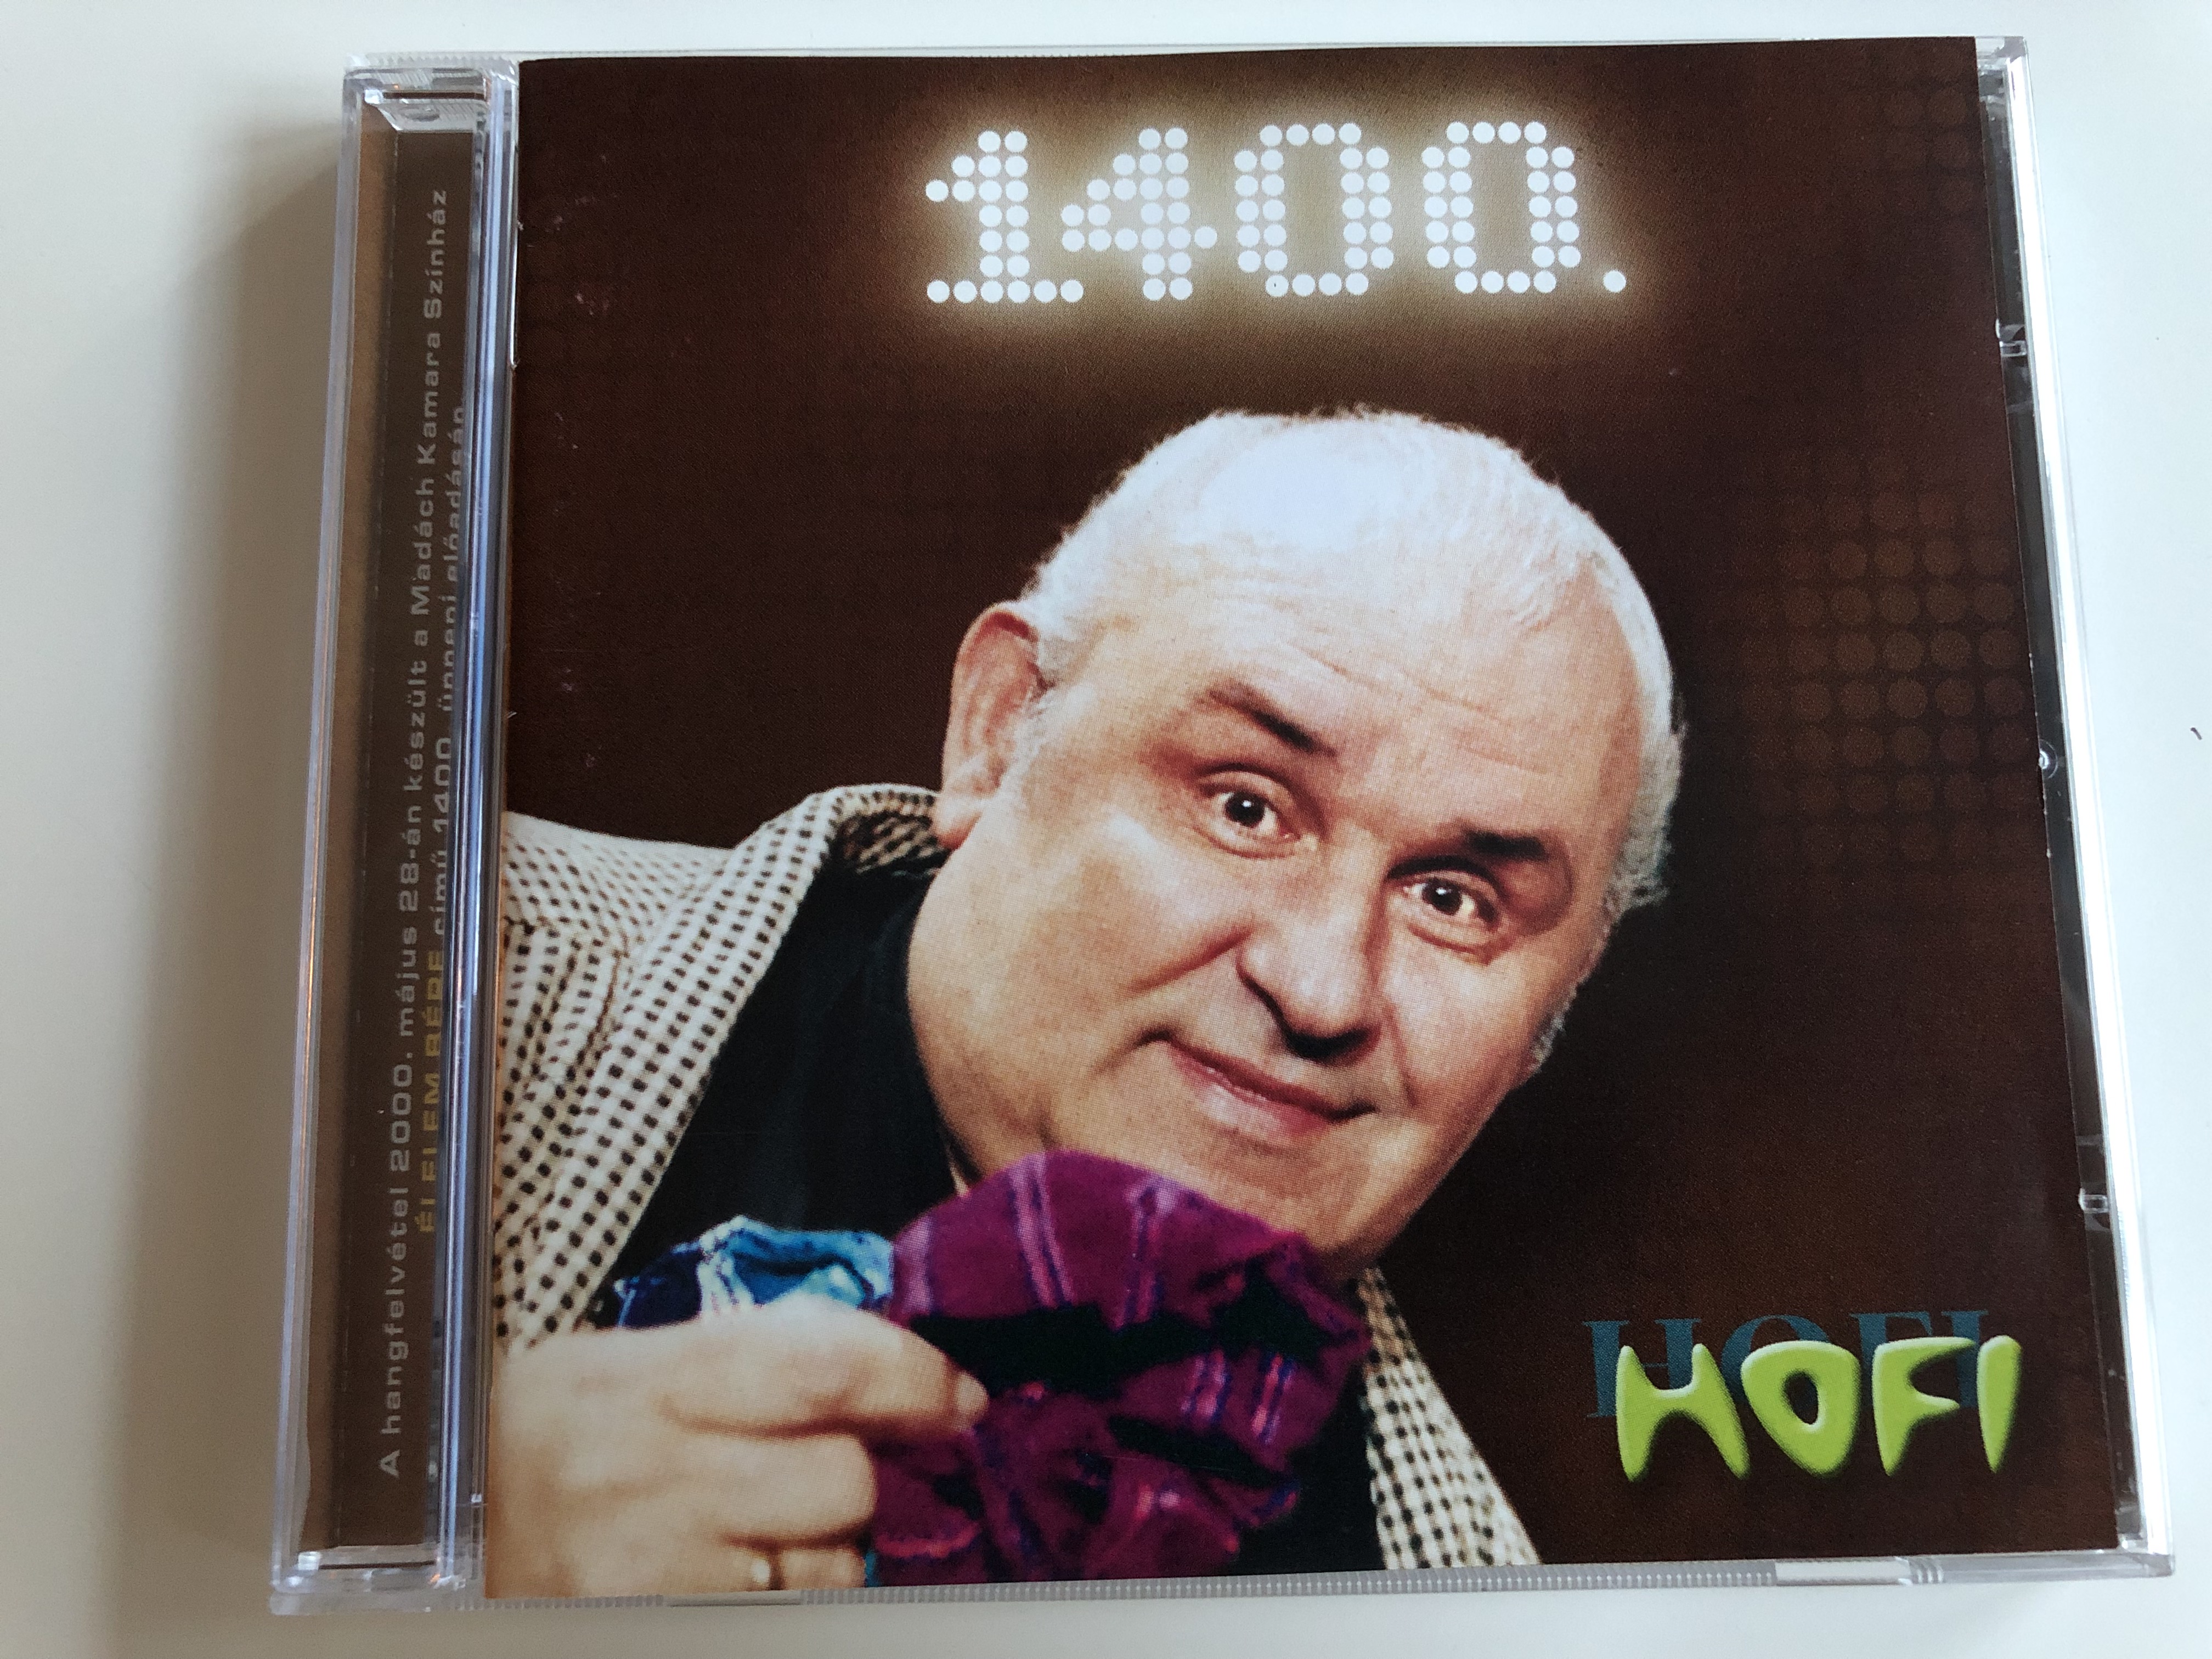 hofi-1400-lelem-b-re-gondolj-ap-dra-az-nnep-egy-ki-regedett-vad-szkutya-audio-cd-2000-hungaroton-hcd-37981-1-.jpg